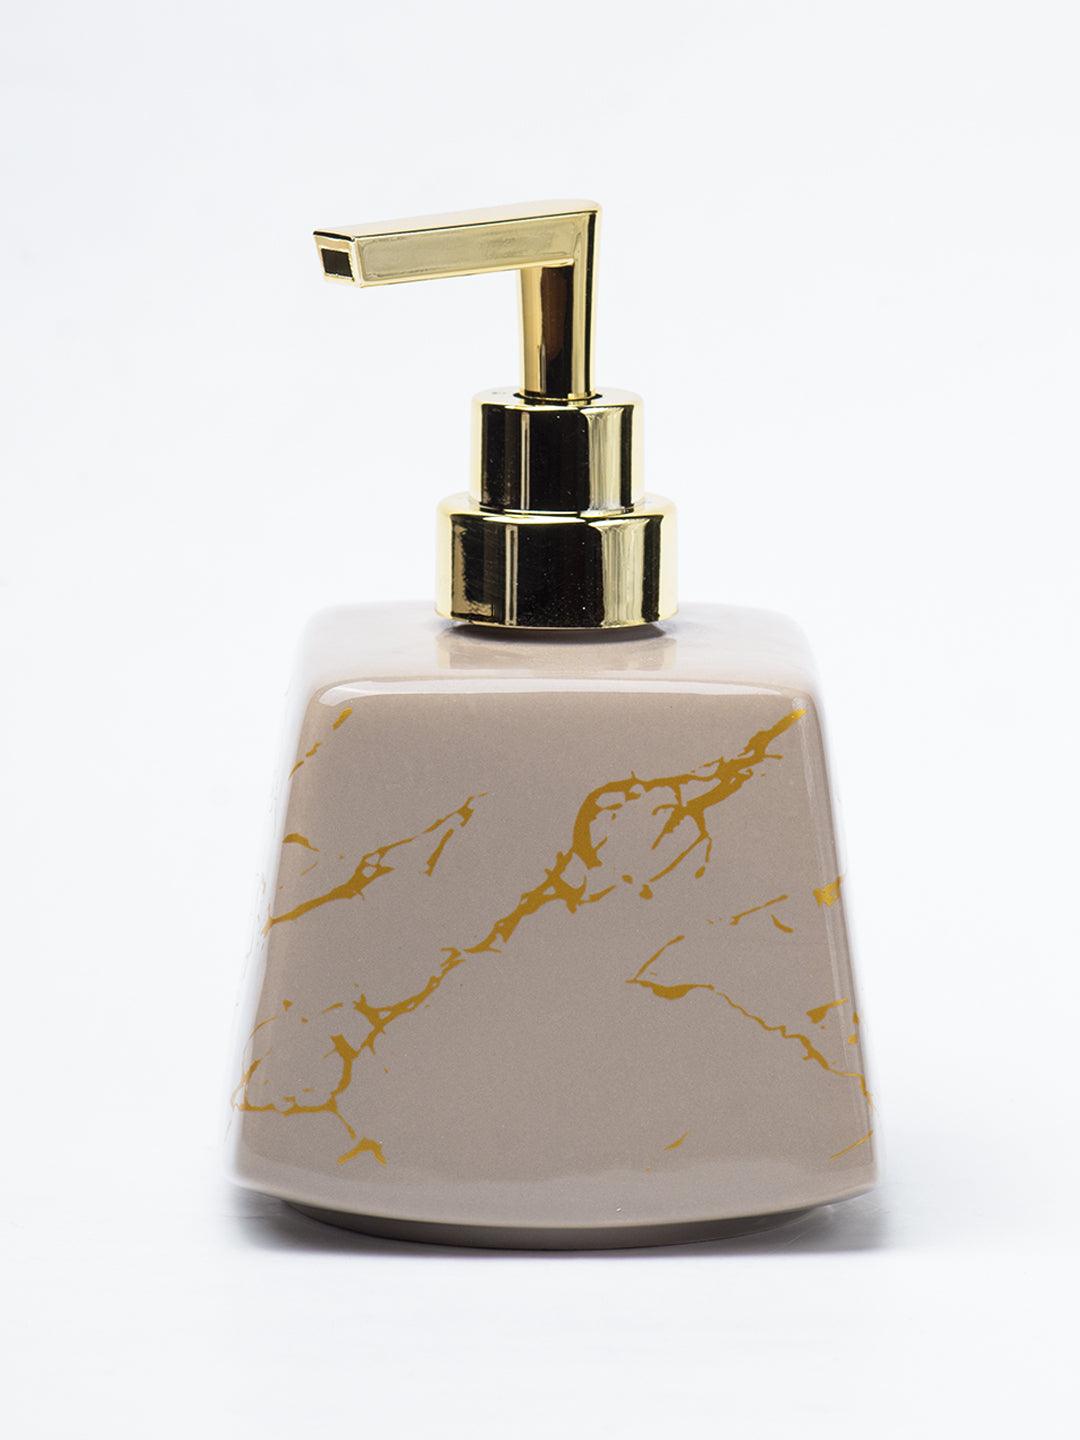 Brown Ceramic Soap Dispenser - Stone Finish, Bath Accessories - 2